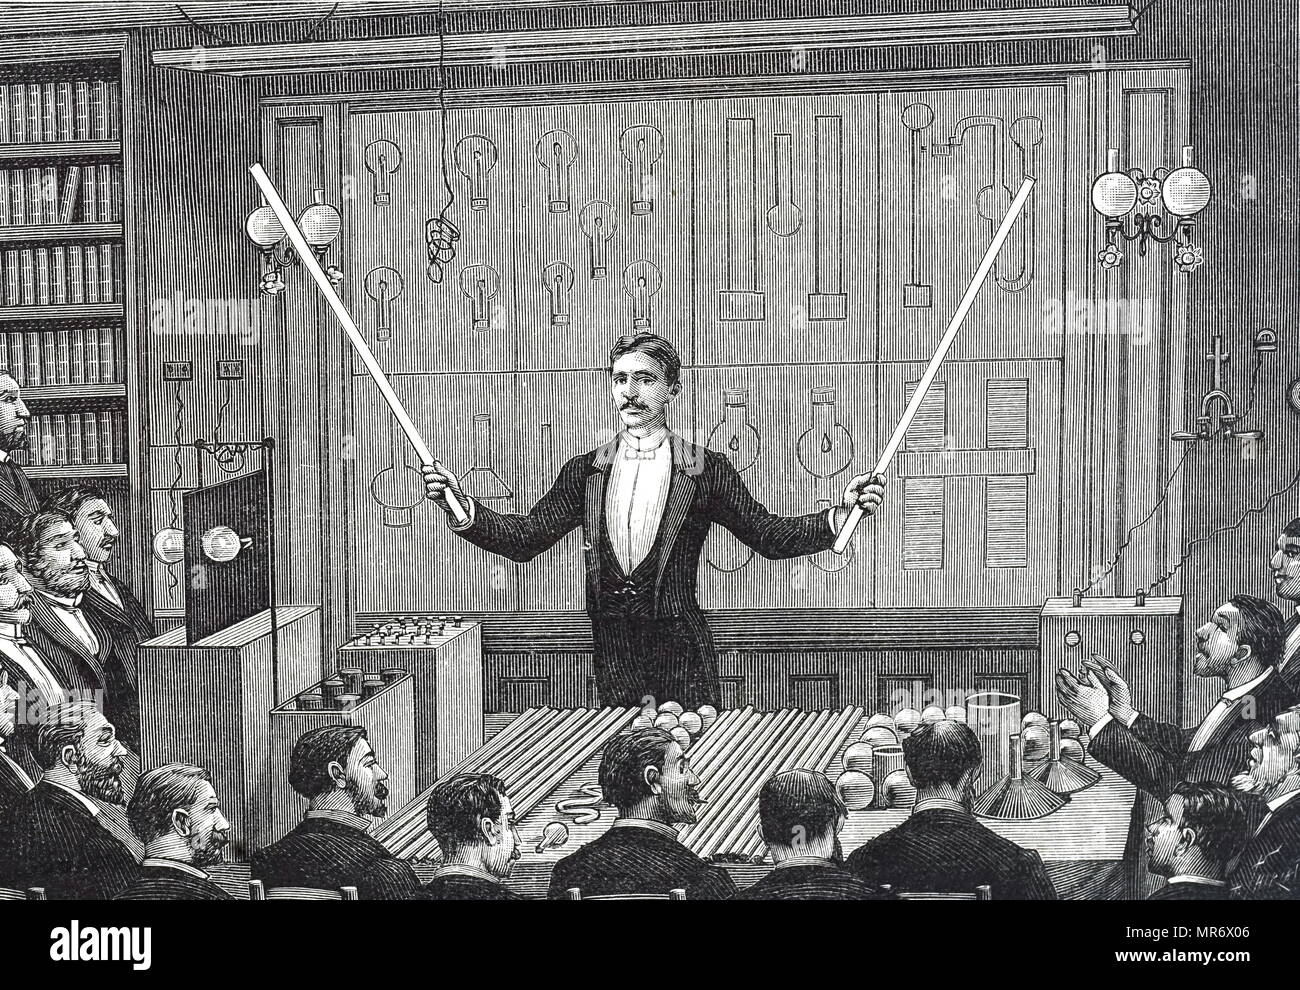 Messtechnik Funktechnik Roehren, Nikola Tesla - Wiederaufbau und  Modernisierung einer Anlage aus dem Jahre 1900